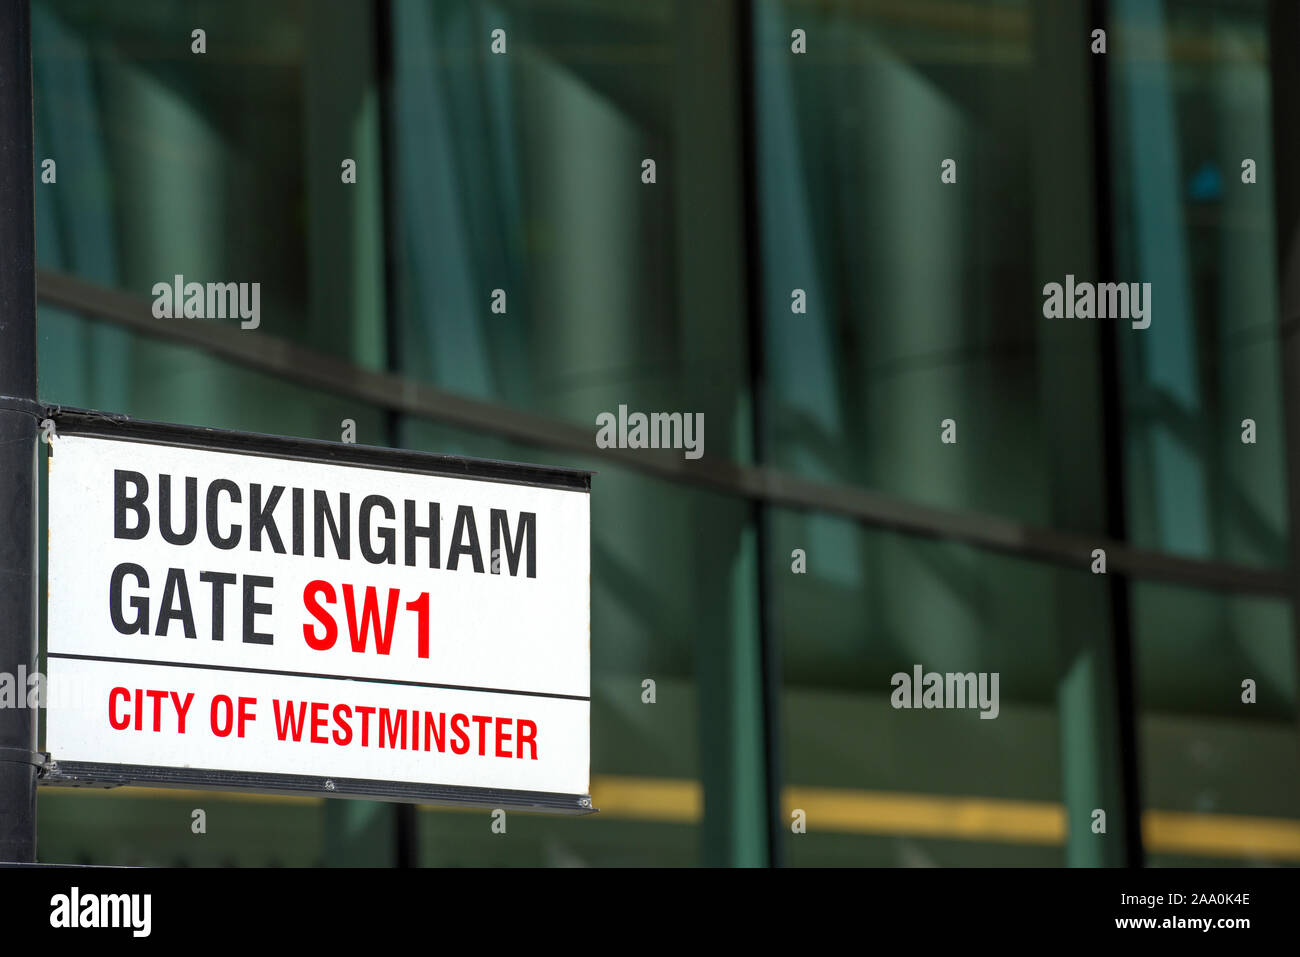 Buckingham Gate señal de la calle metálica contra una fachada de vidrio de la oficina Foto de stock